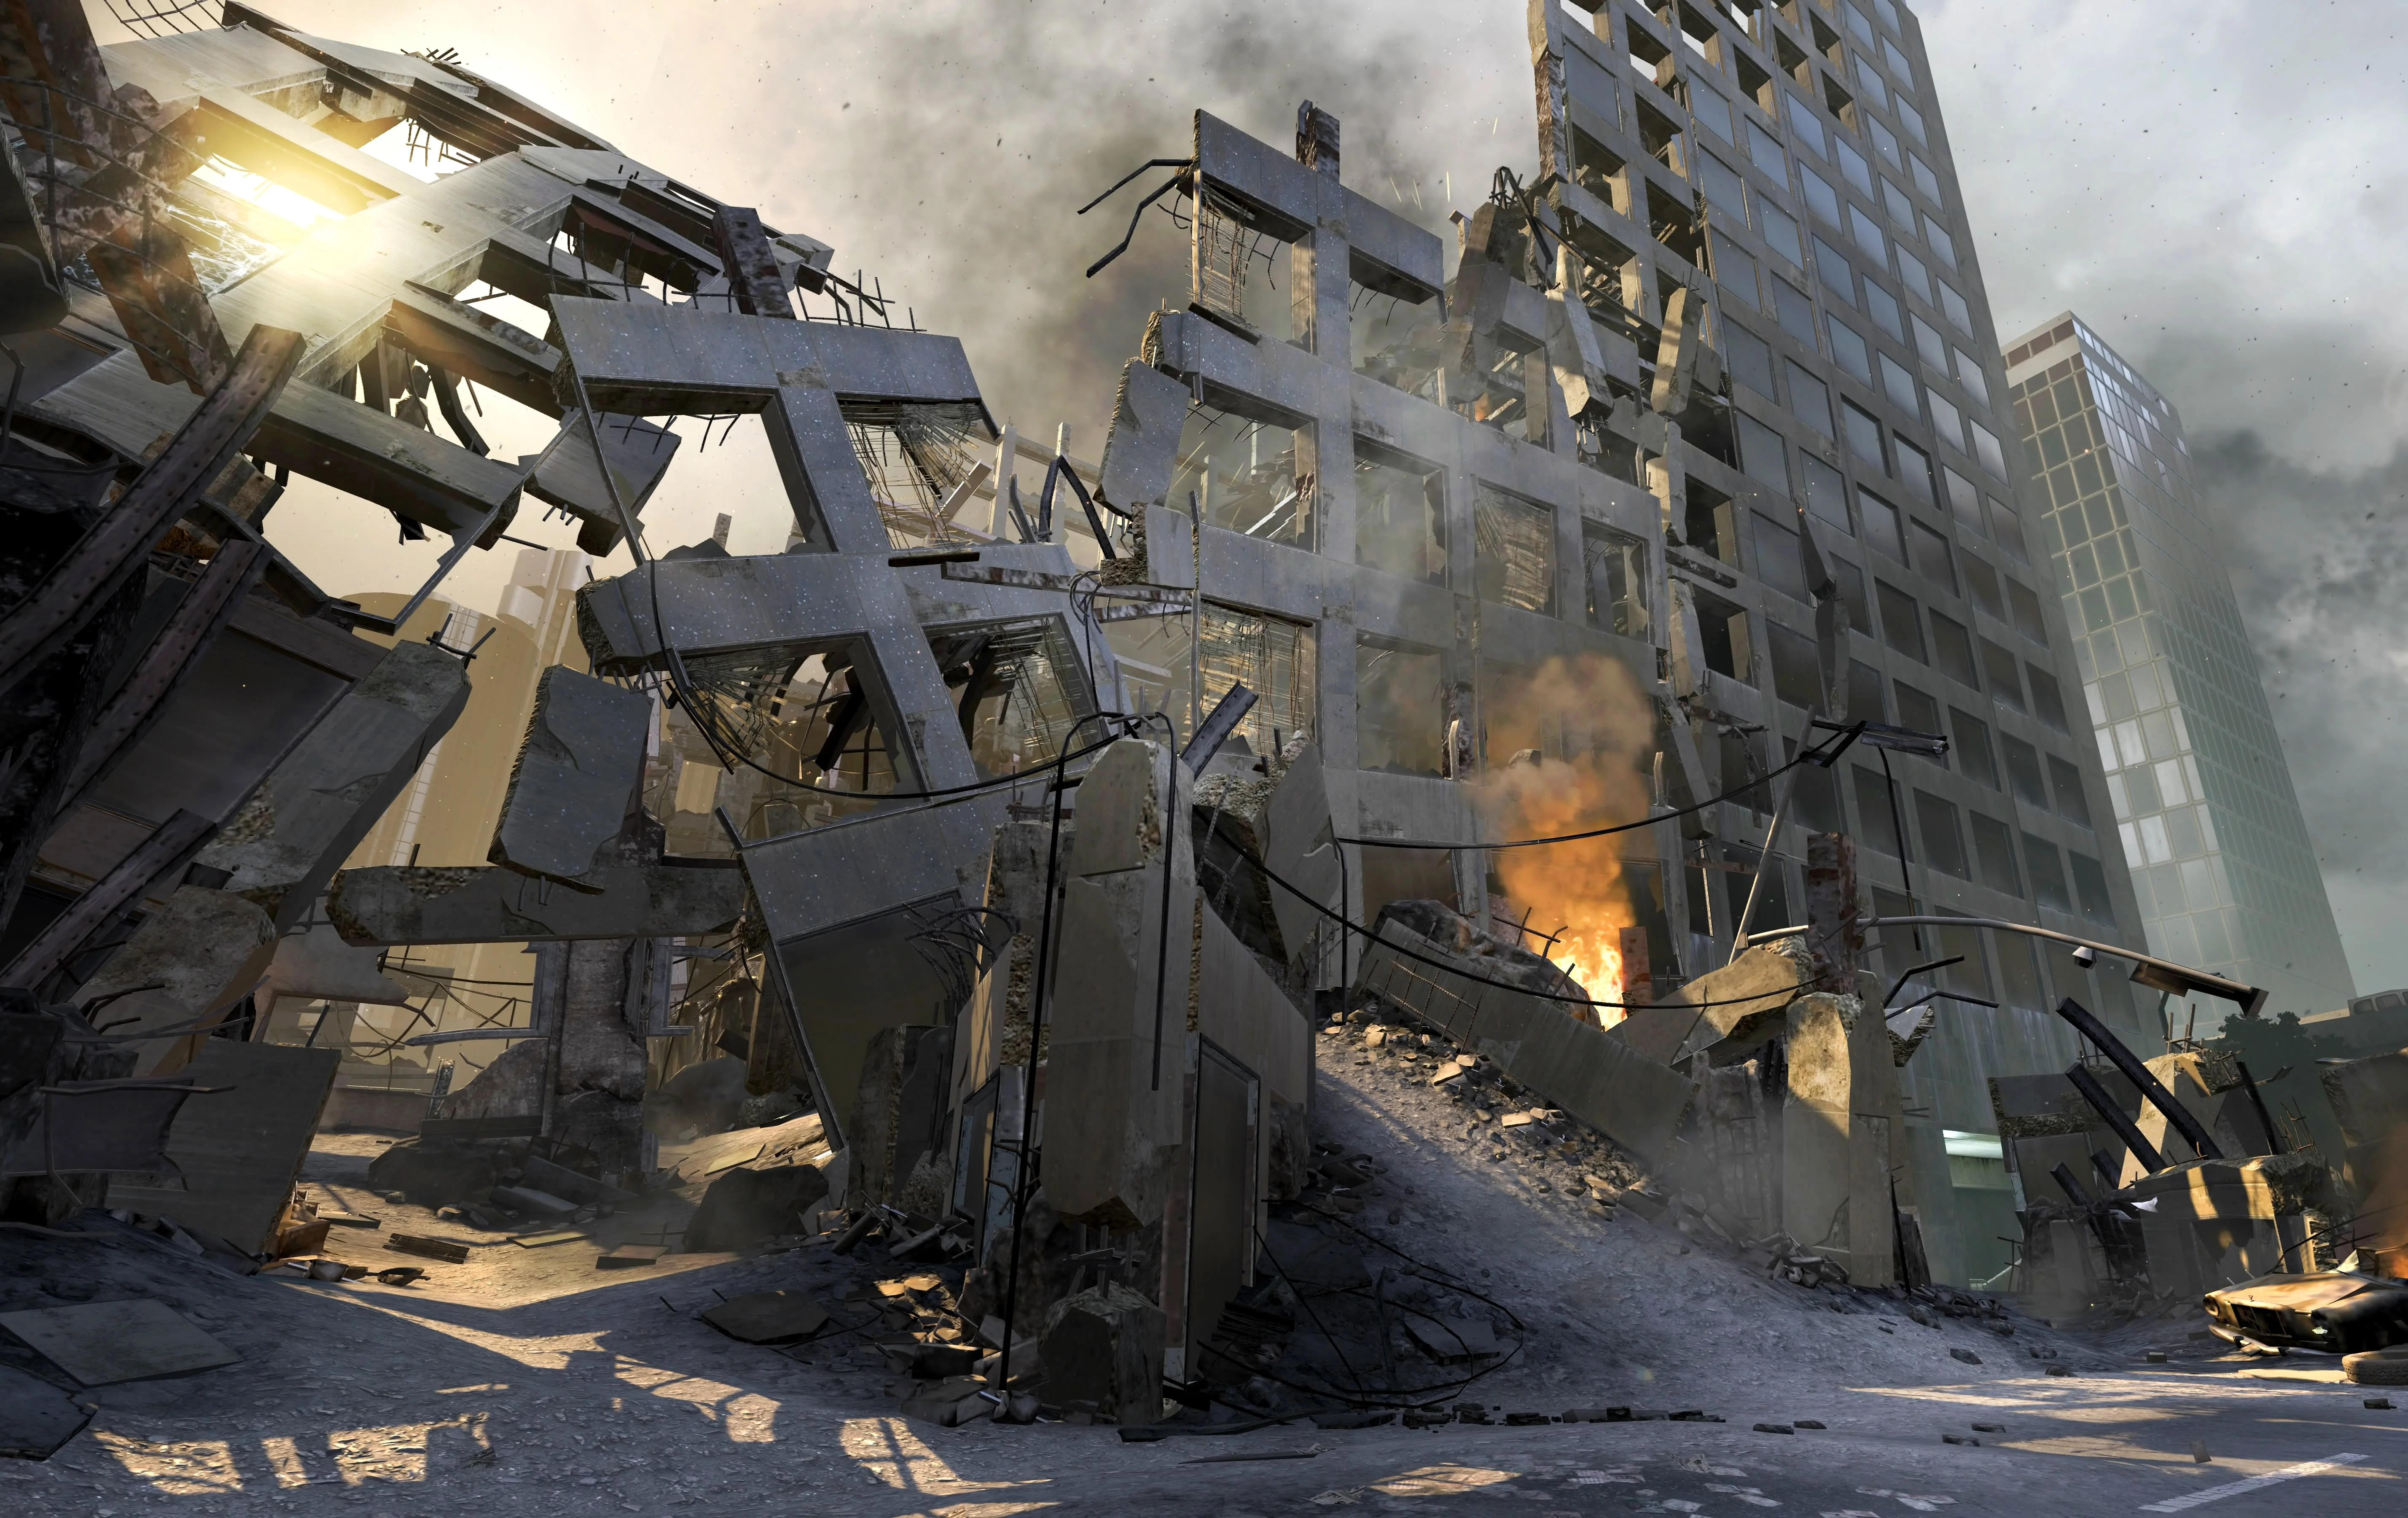 Call of Duty: Black Ops 2 - впечатления из Лос-Анджелеса